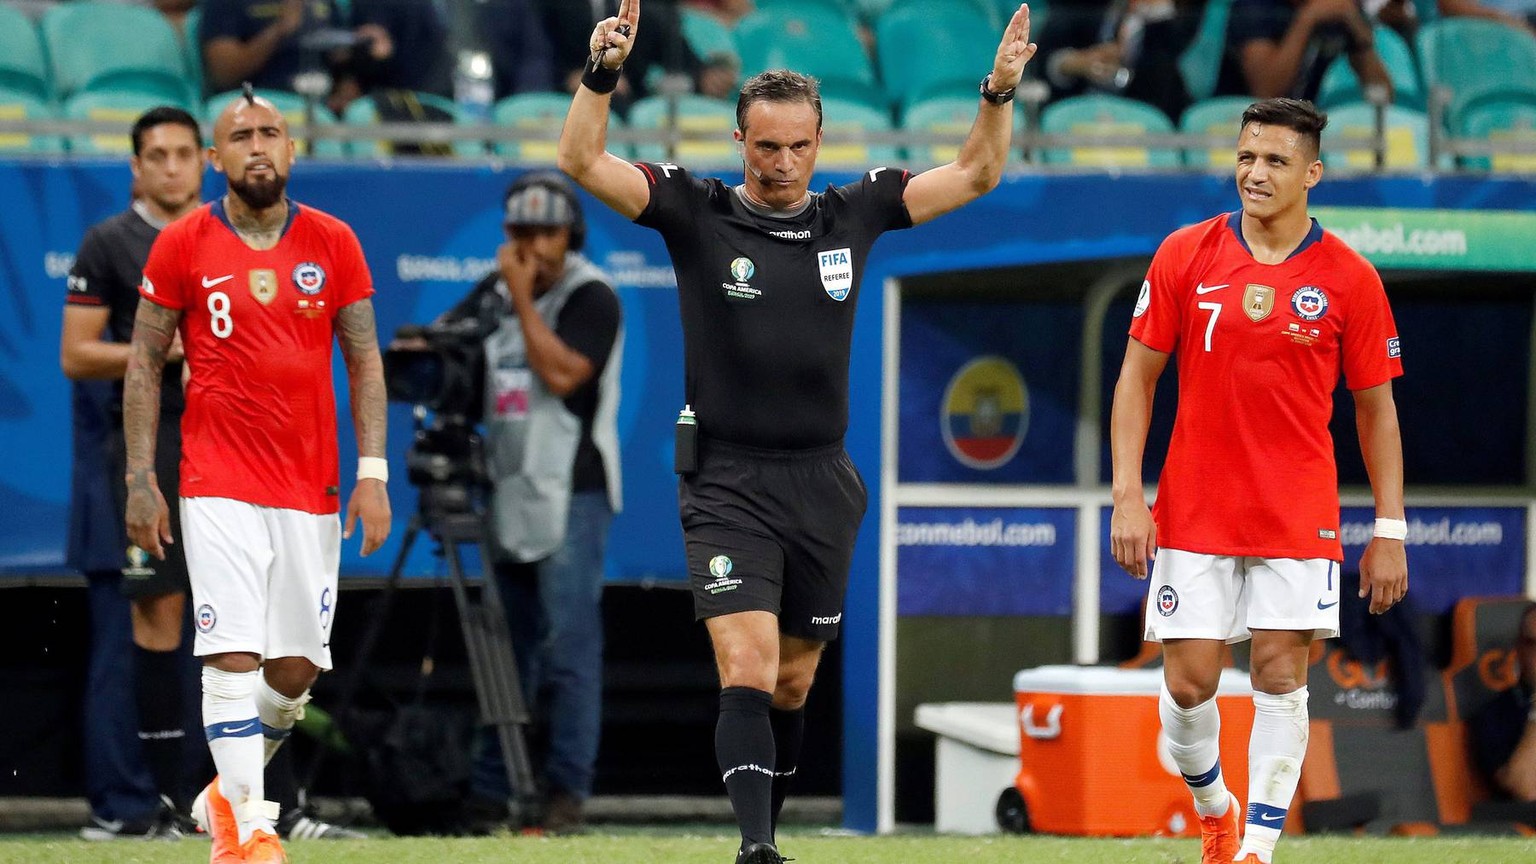 Das Unbehagen, wenn der Schiedsrichter ein Rechteck in den Himmel zeichnet, man sieht es in den Gesichtern von Arturo Vidal (links) und Alexis Sanchez (rechts).